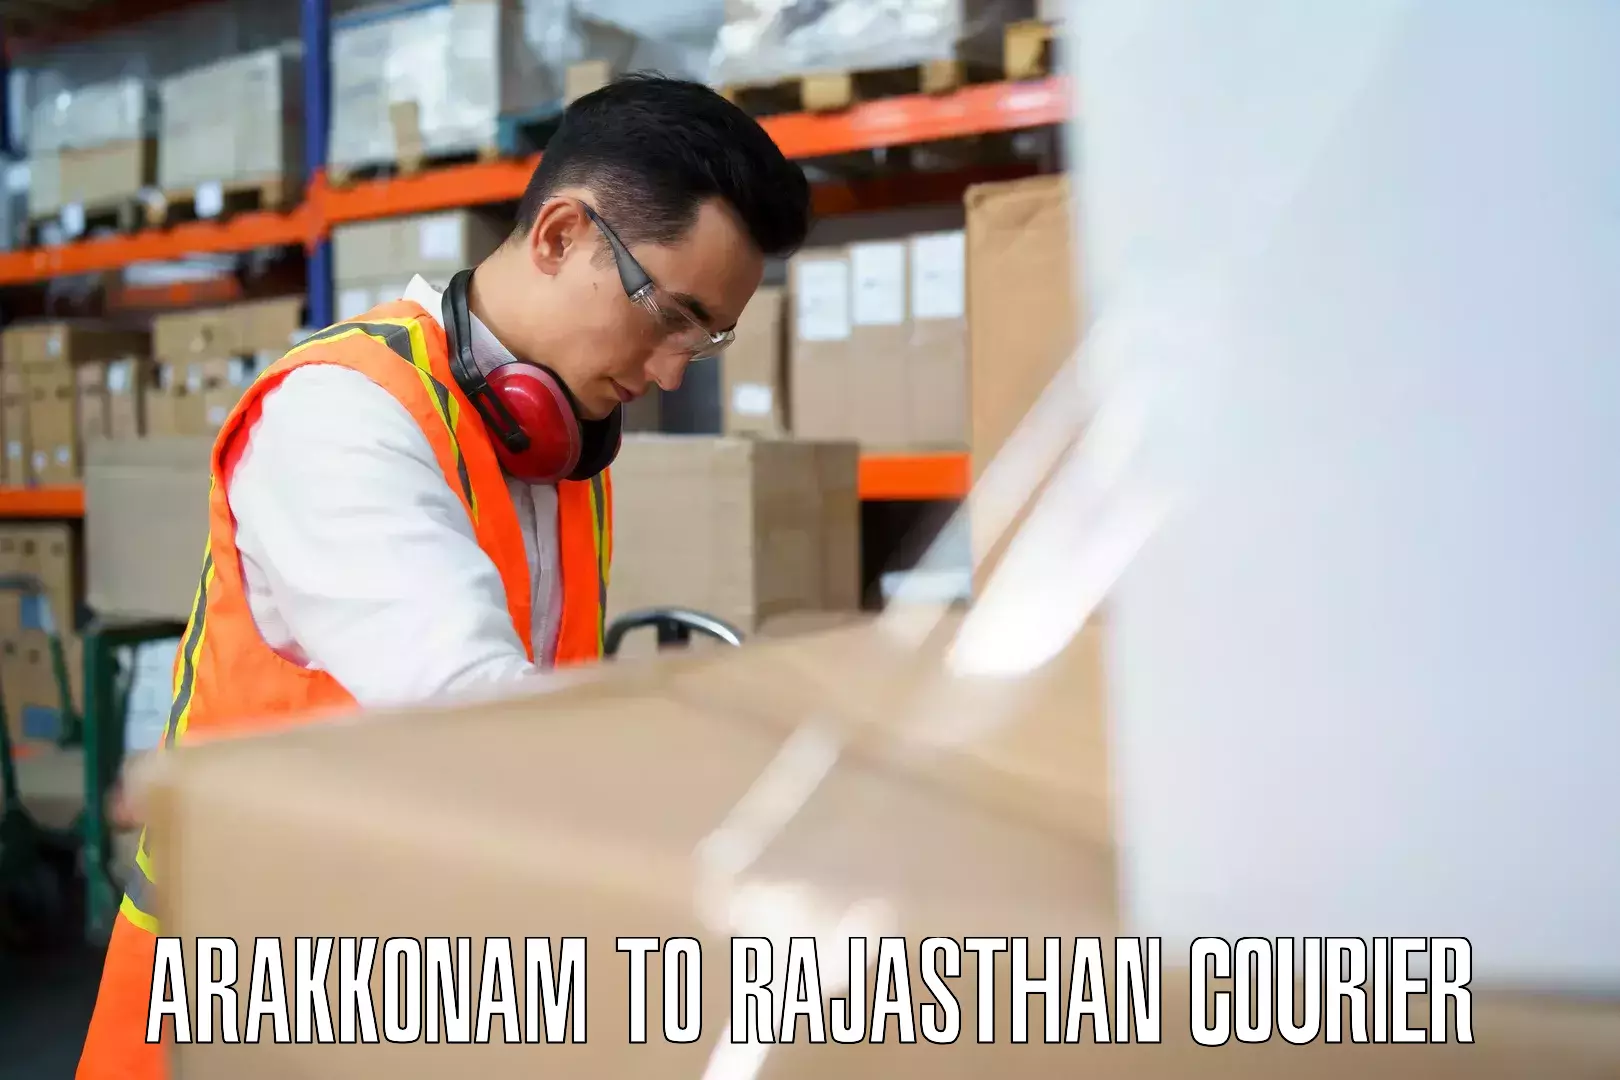 Luggage shipment specialists Arakkonam to Kaman